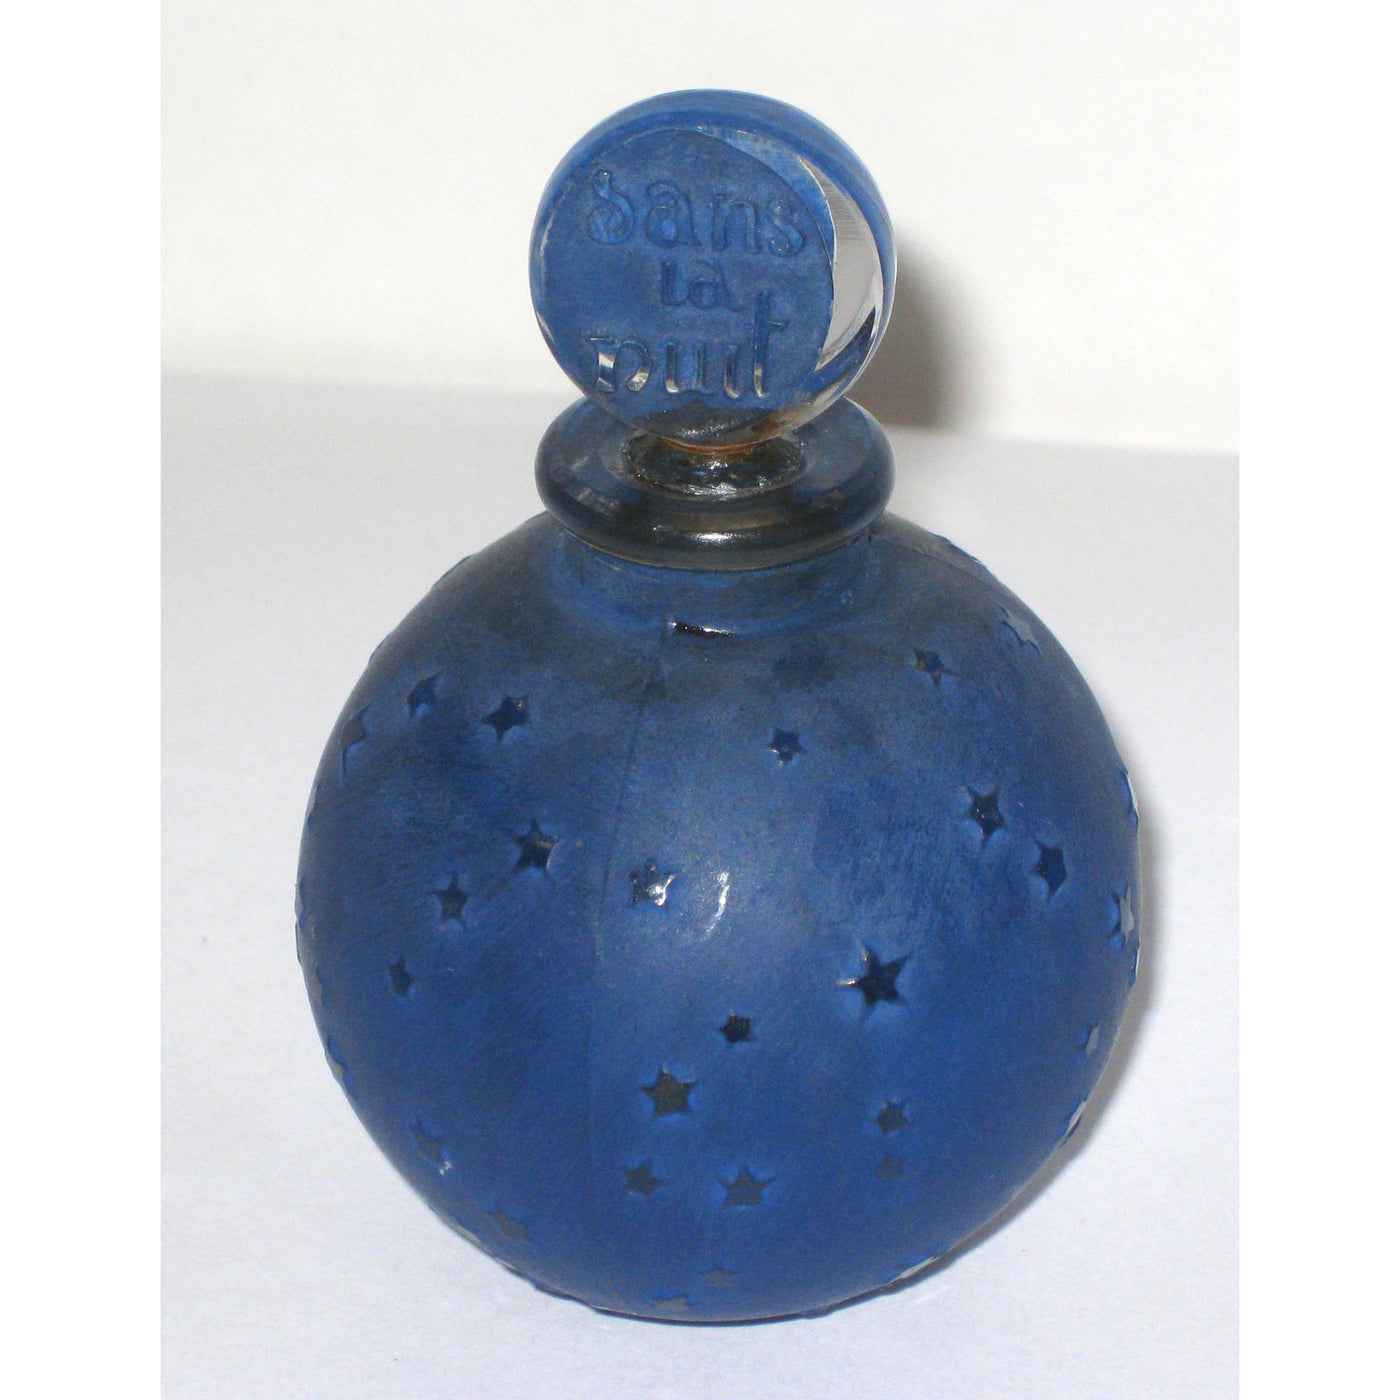 Vintage Worth Dans La Nuit Perfume Bottle By R. Lalique